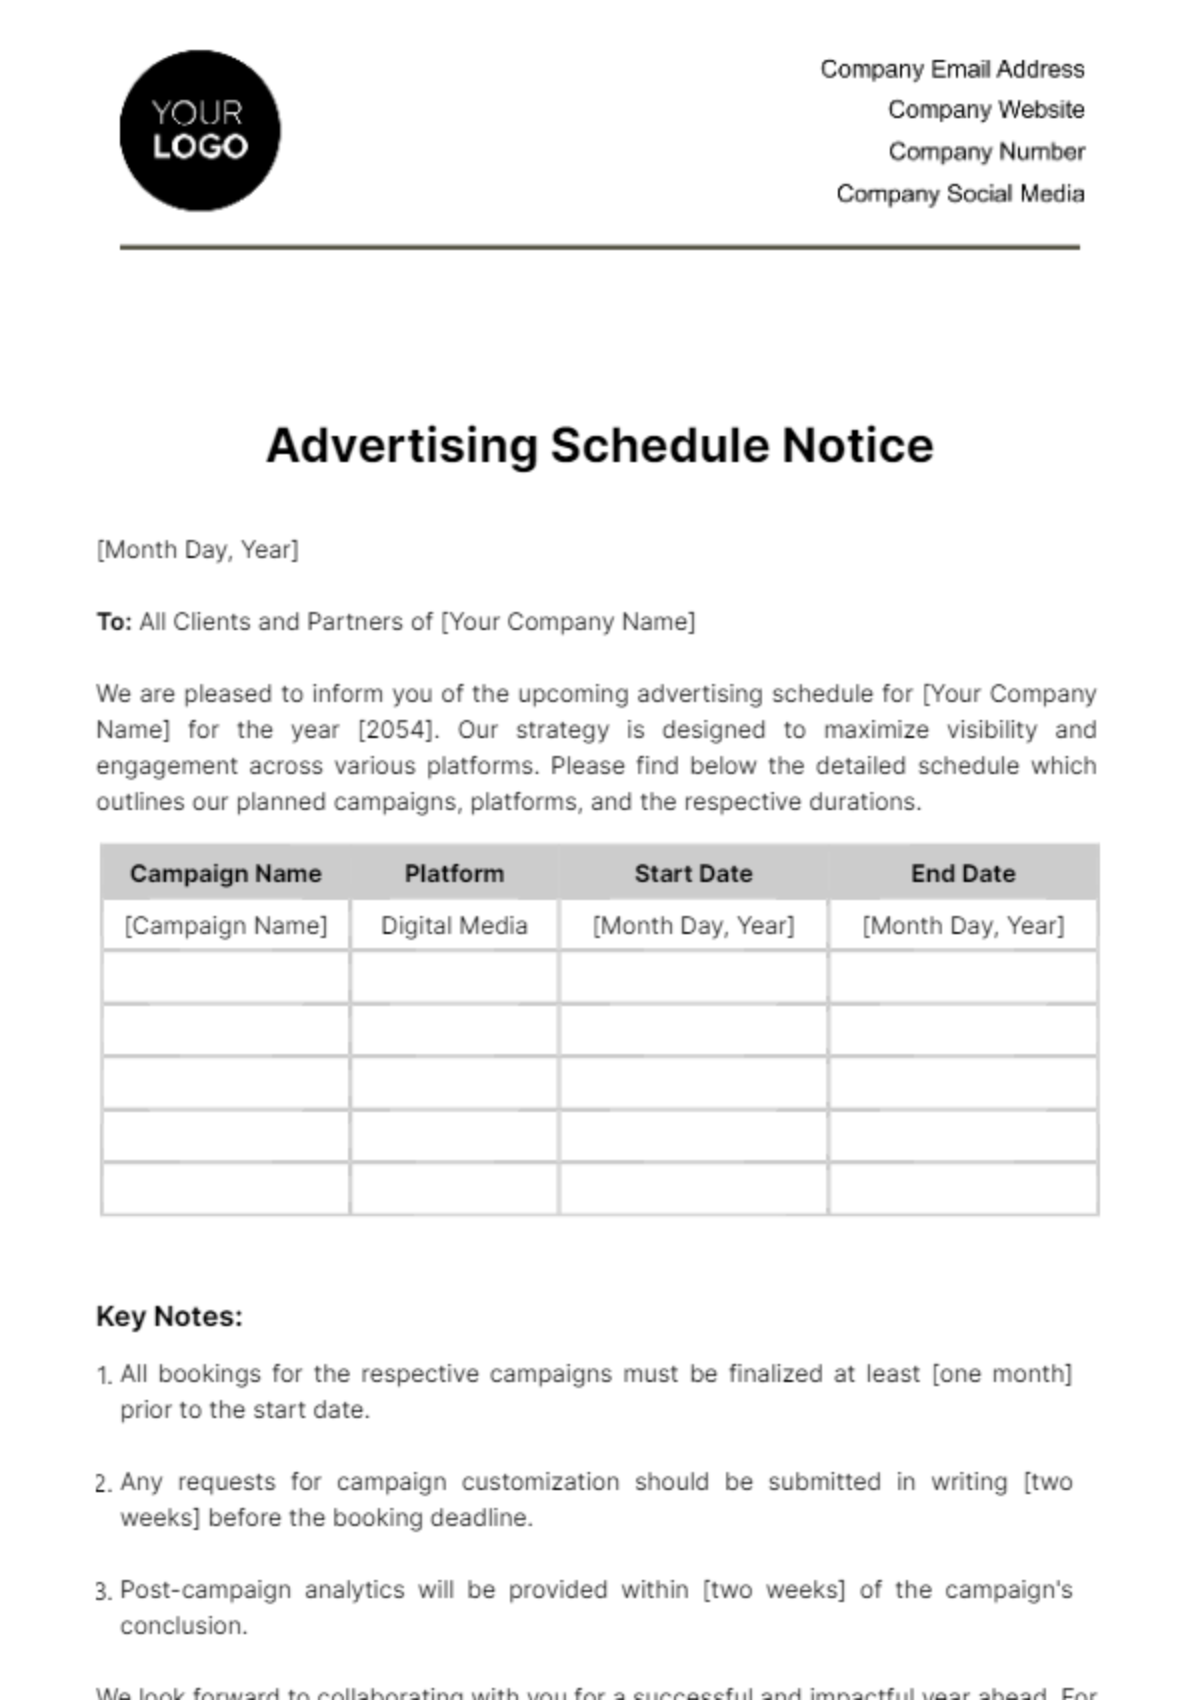 Advertising Schedule Notice Template